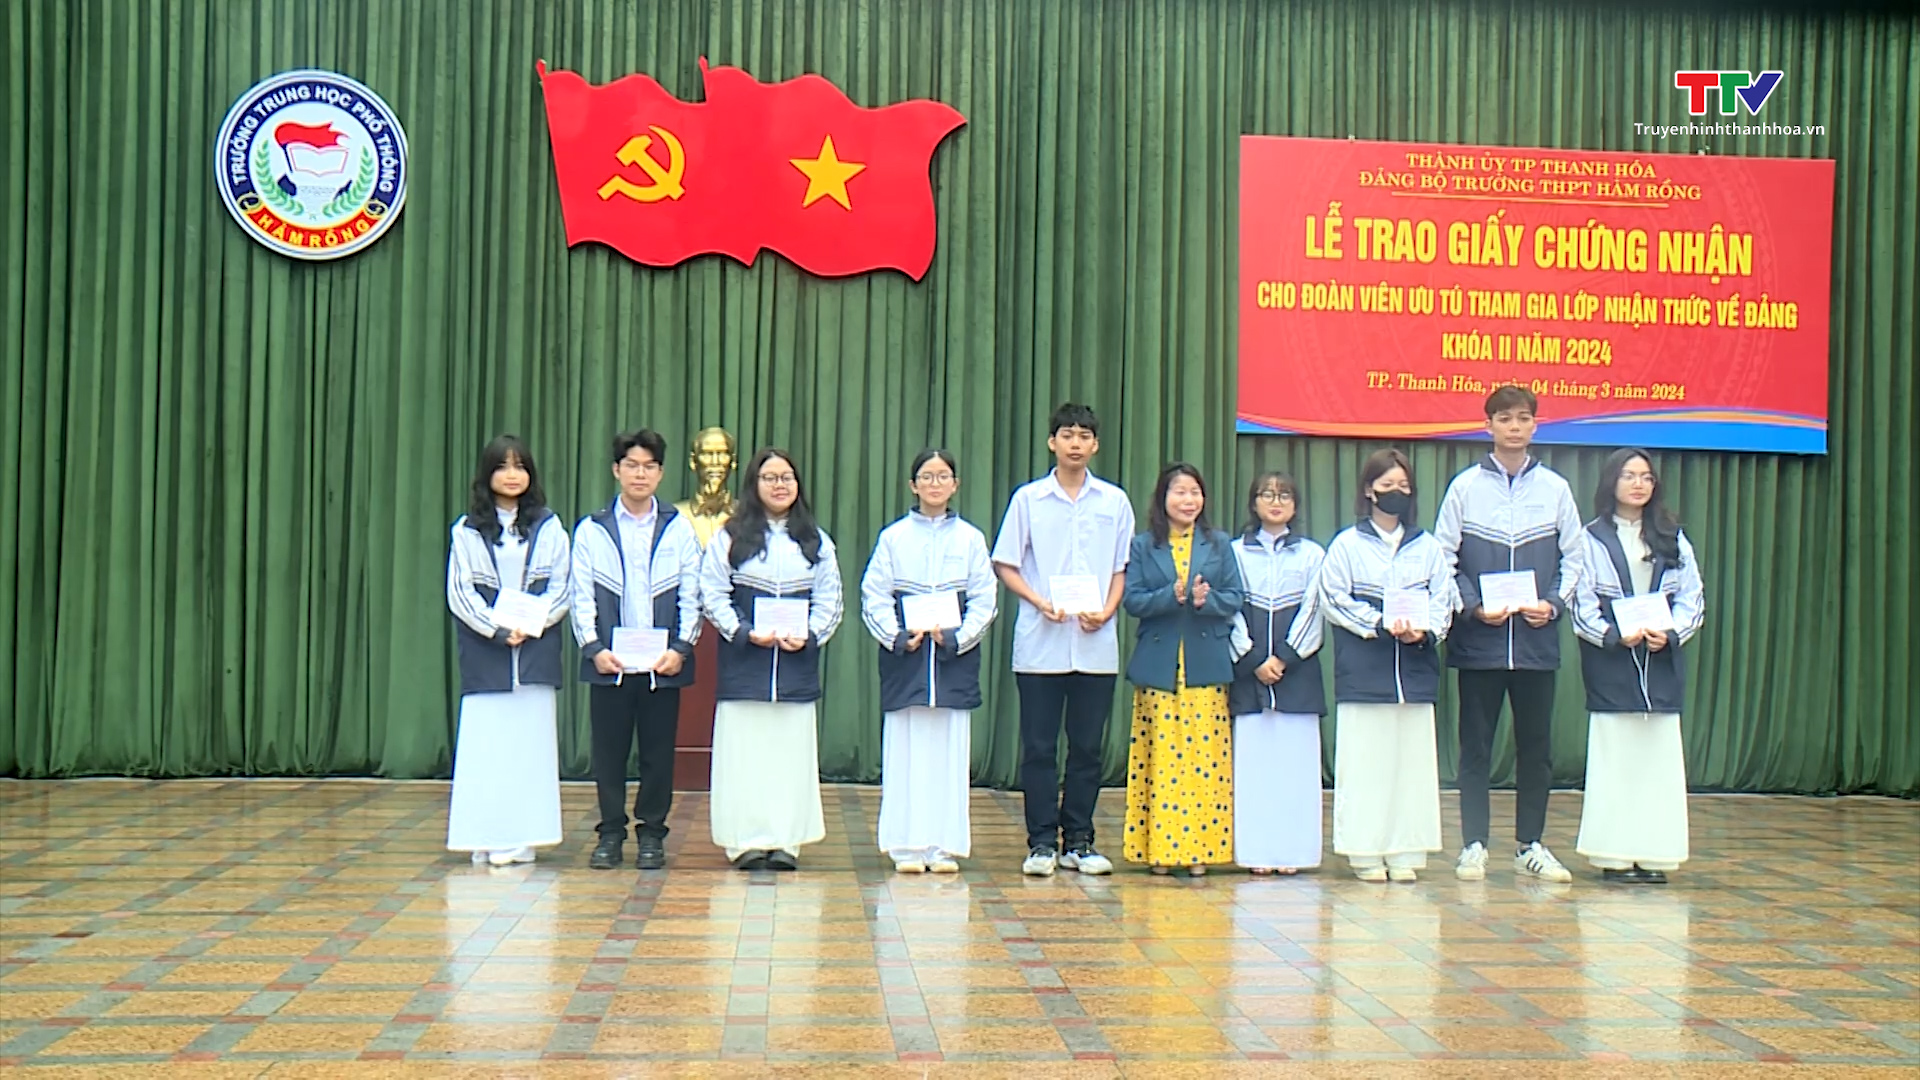 Tin tổng hợp hoạt động chính trị, kinh tế, văn hóa, xã hội trên địa bàn thành phố Thanh Hóa ngày 6/3/2024- Ảnh 4.